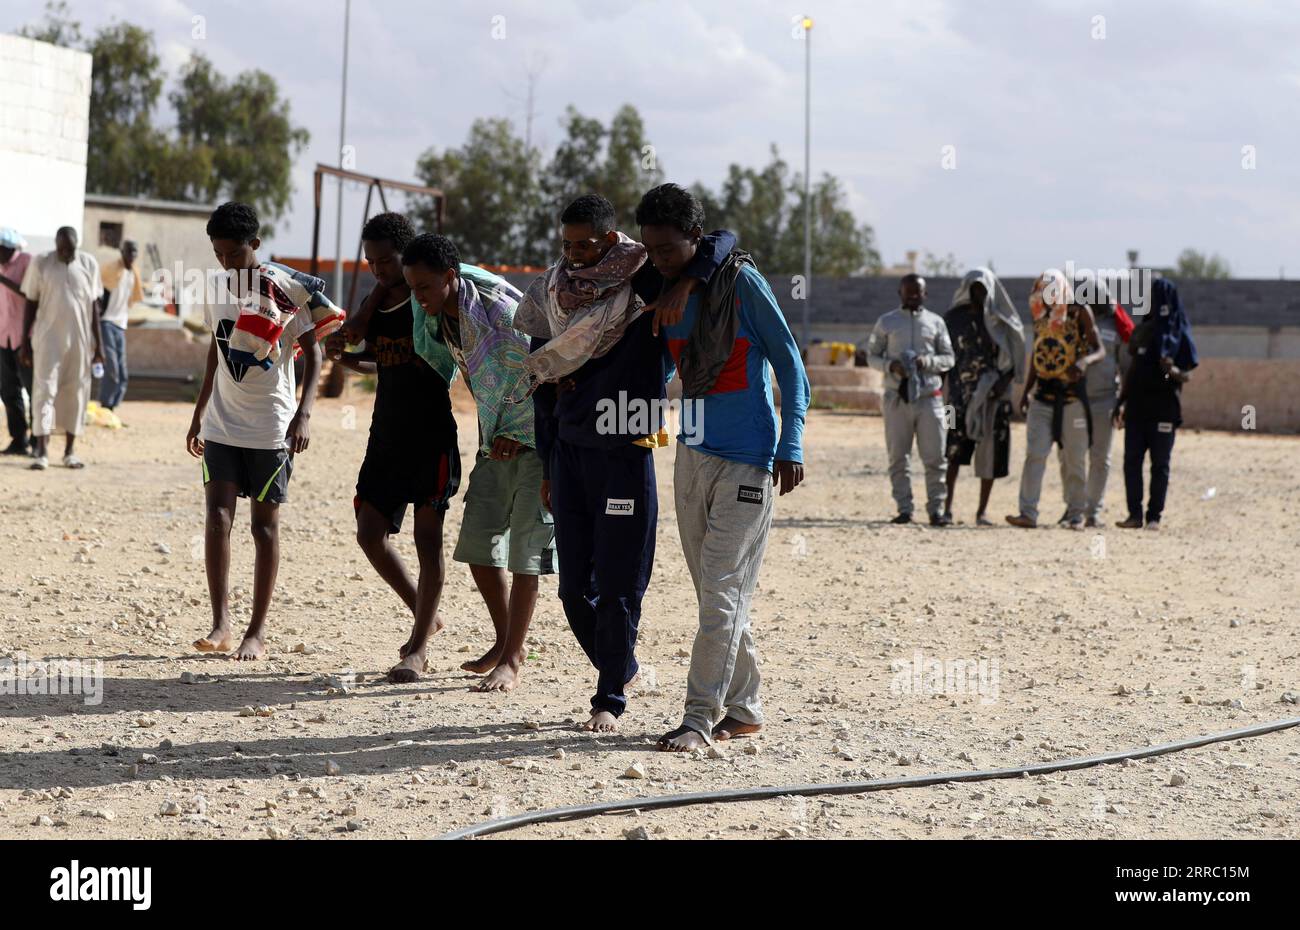 211012 -- TRIPOLI, 12 ottobre 2021 -- i migranti sono temporaneamente insediati nel rifugio Ain Zara a Tripoli, Libia, l'11 ottobre 2021. Un gruppo di immigrati clandestini è stato portato in un centro di accoglienza temporaneo nella capitale di Tripoli, giorni dopo la fuga da un centro di detenzione della città. Foto di /Xinhua LIBIA-TRIPOLI-MIGRANTI HamzaxTurkia PUBLICATIONxNOTxINxCHN Foto Stock